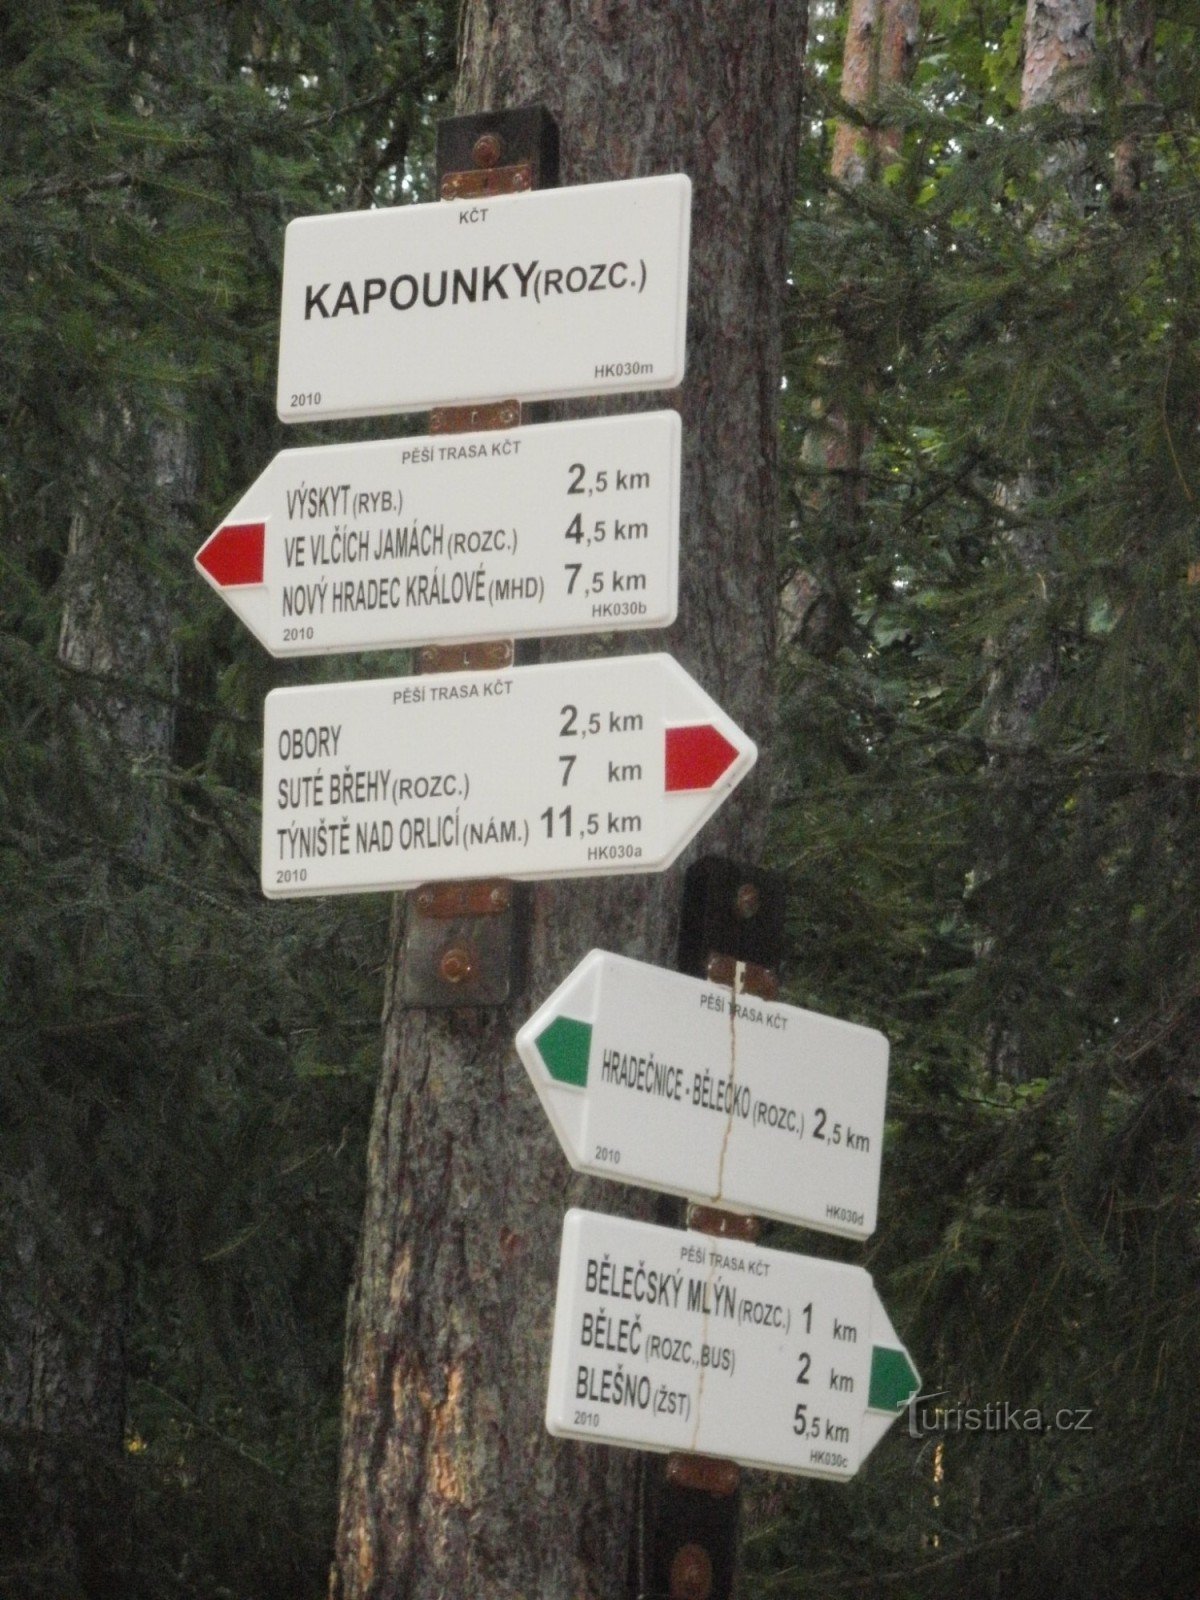 Križišče Kapounky - Hradecké lesy